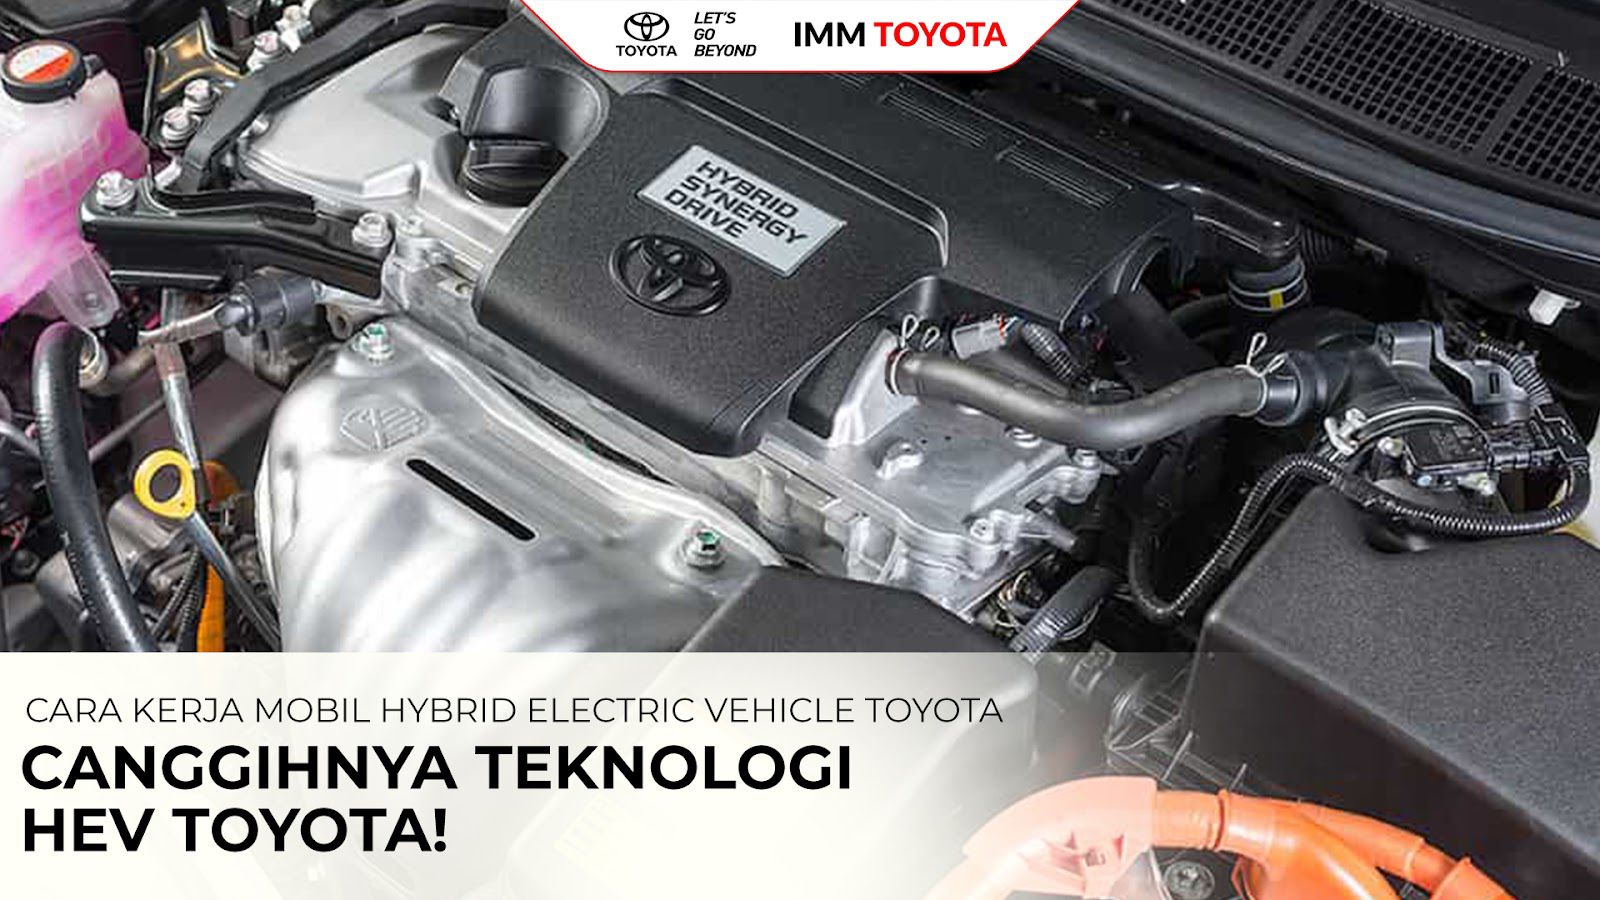 Cara Kerja Hev Toyota Mobil Hybrid Electric Vehicle Toyota Kabar